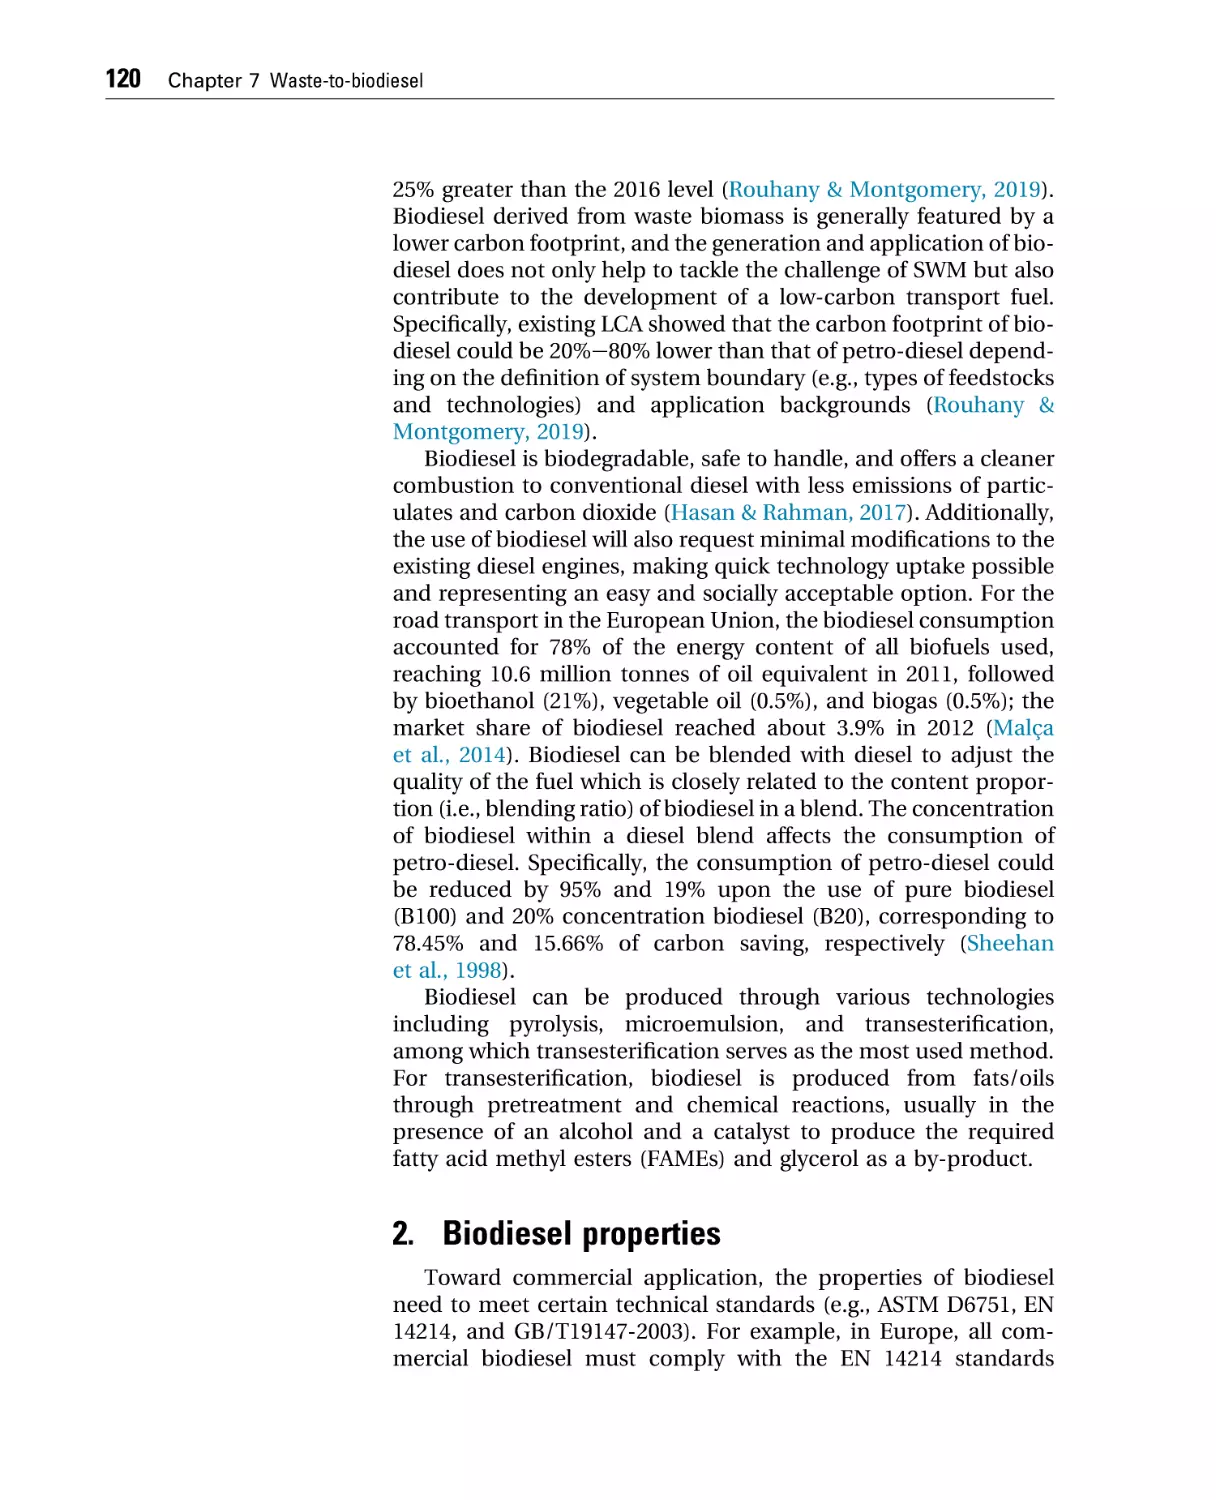 2. Biodiesel properties